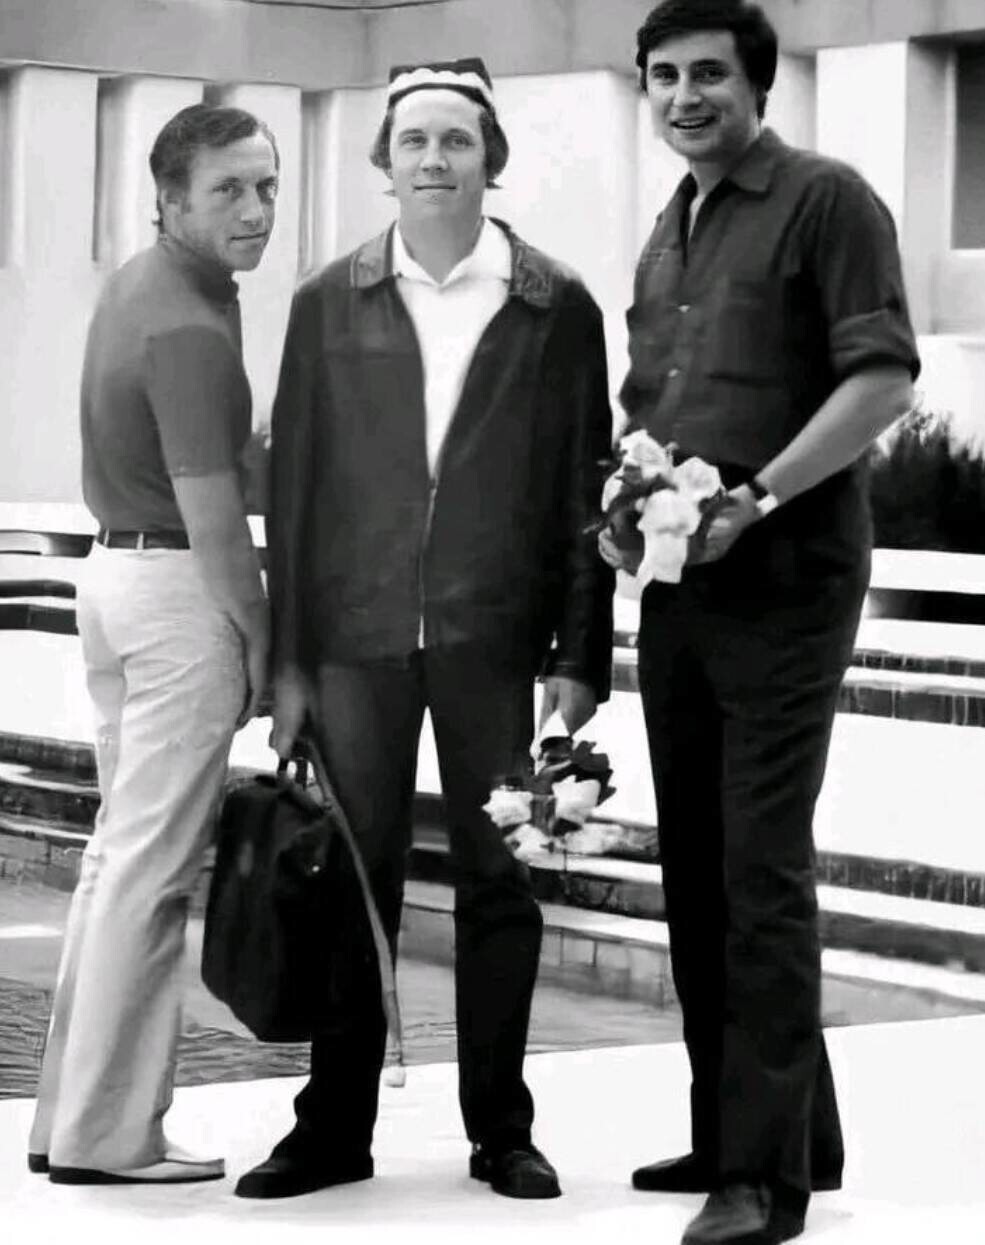 Владимир Высоцкий, Валерий Золотухин и Вениамин Смехов. Узбекистан, город Навои. 1973 год.